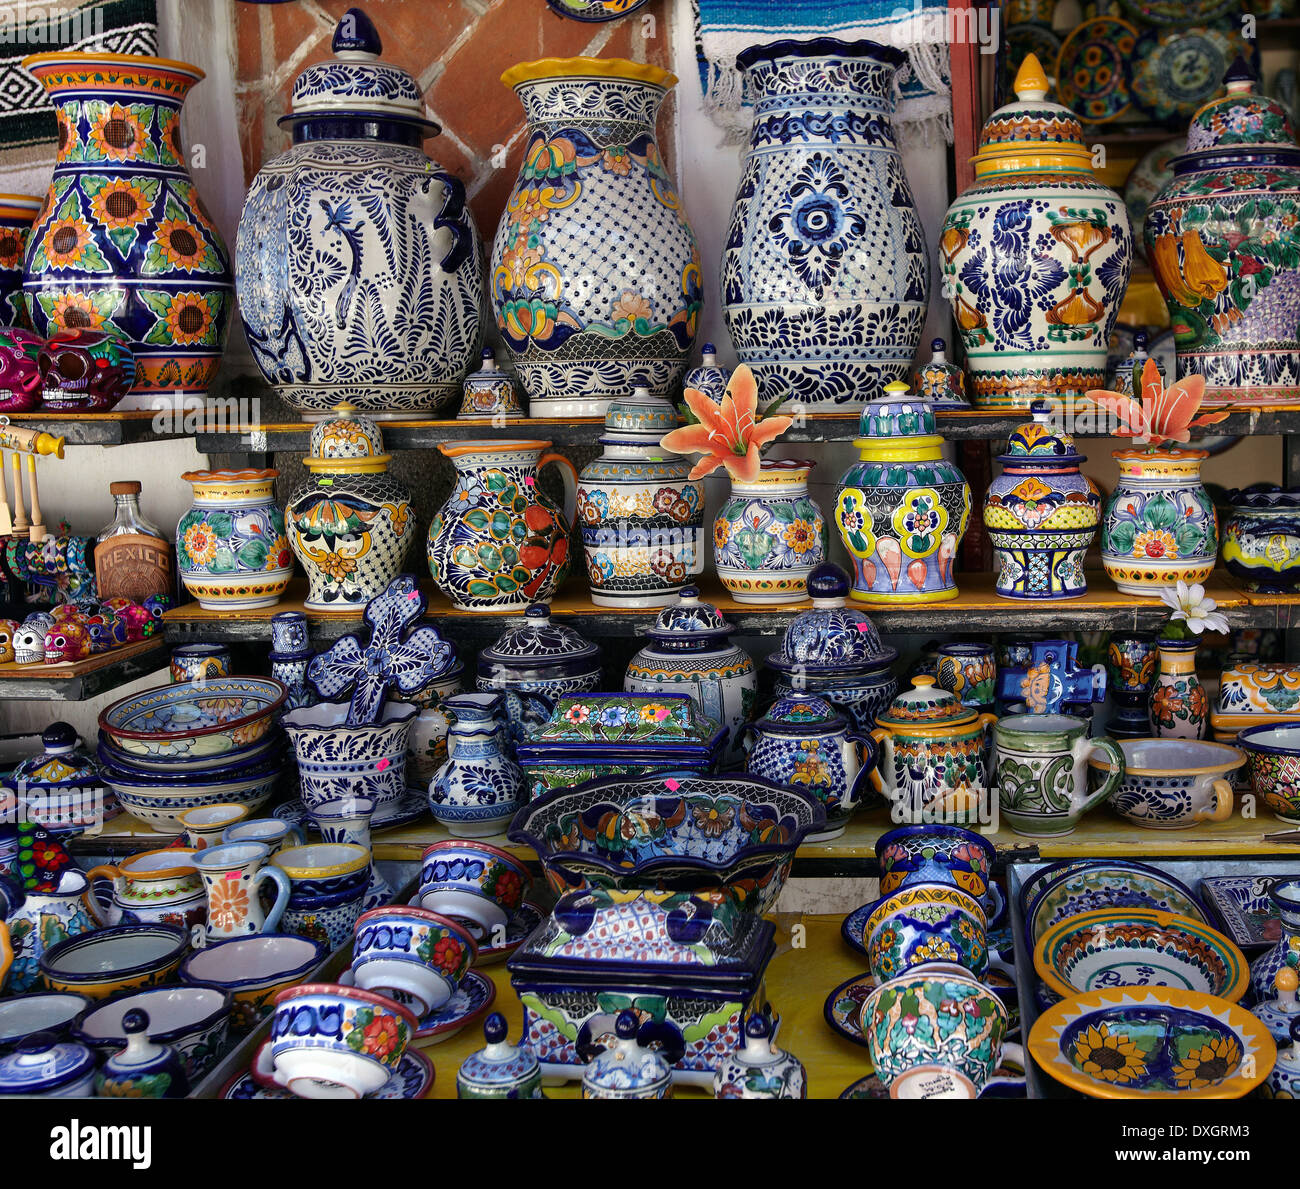 América, Mexico, Puebla state, Puebla city, barrio de los sapos, talavera traditional ceramic of Puebla Stock Photo